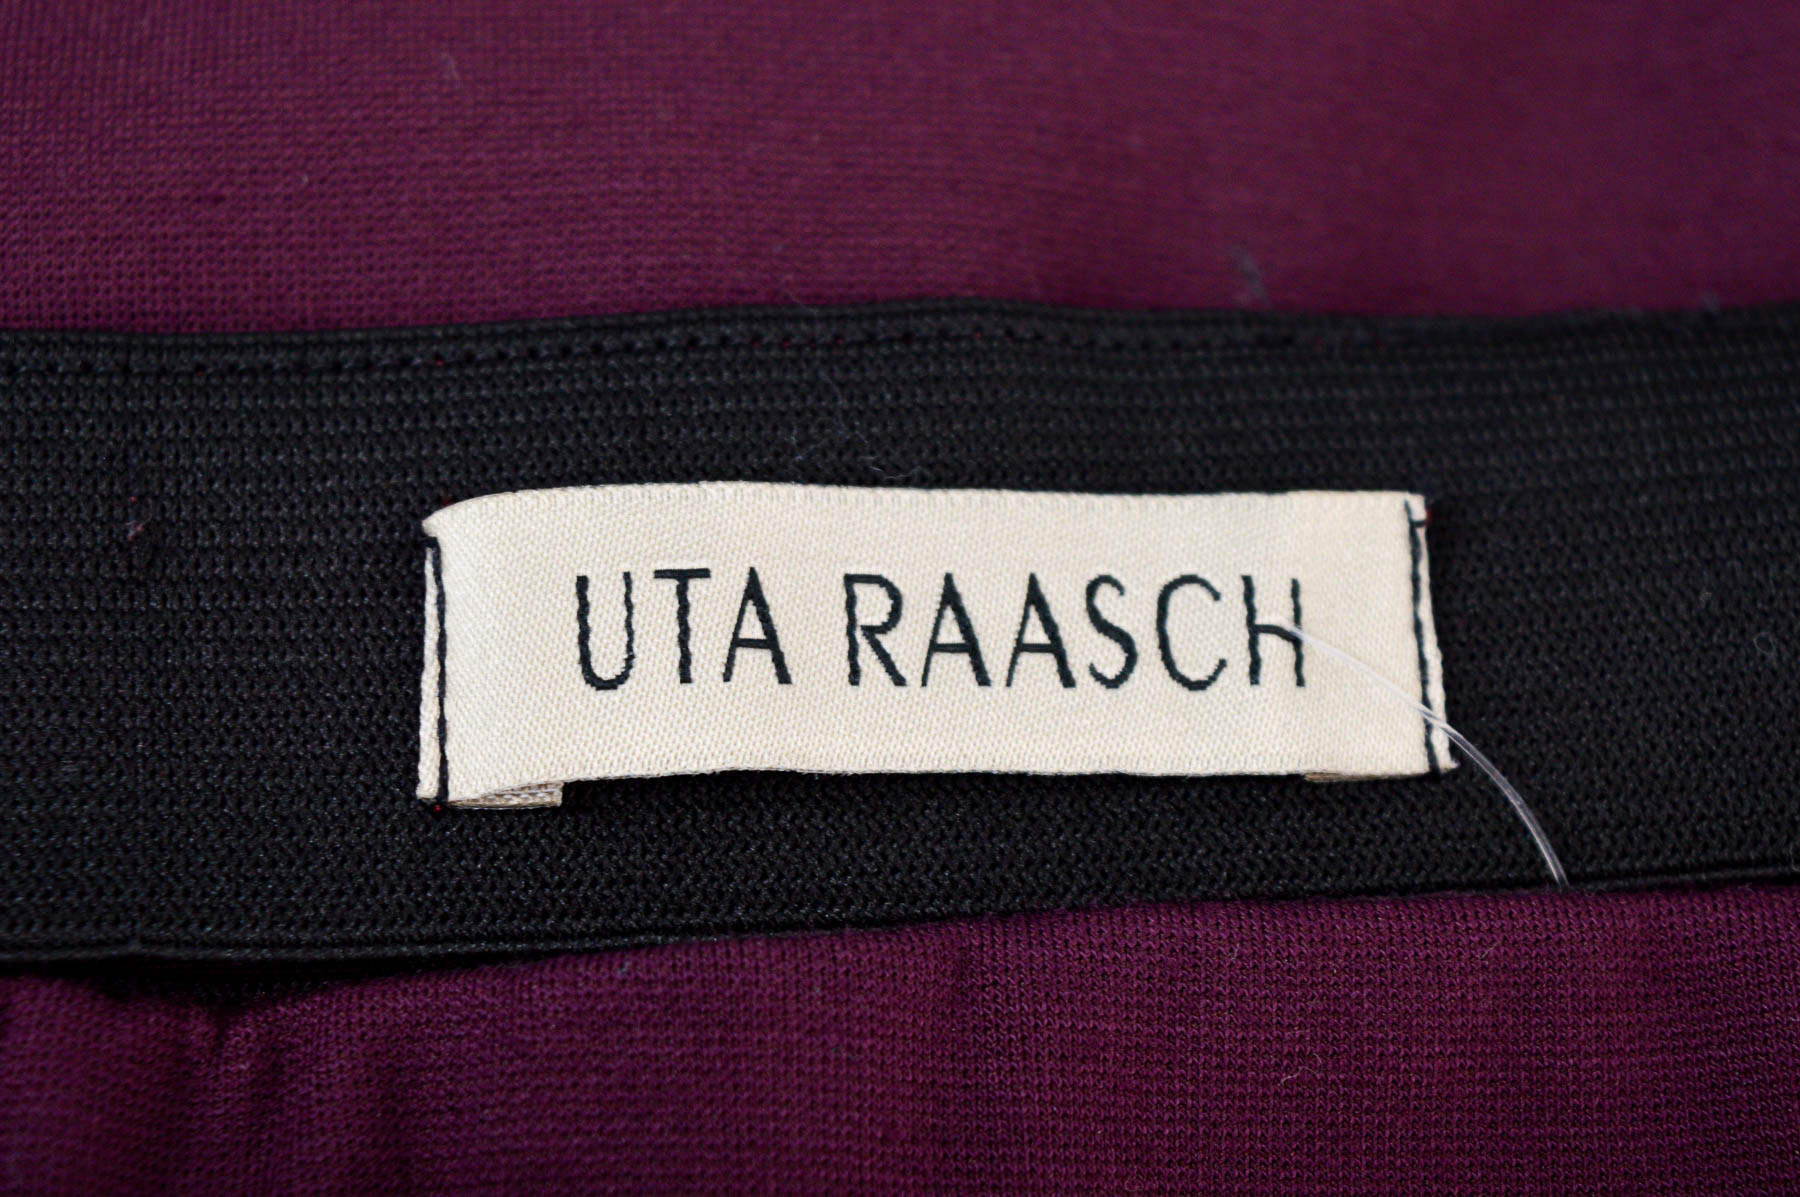 Spódnica - UTA RAASCH - 2